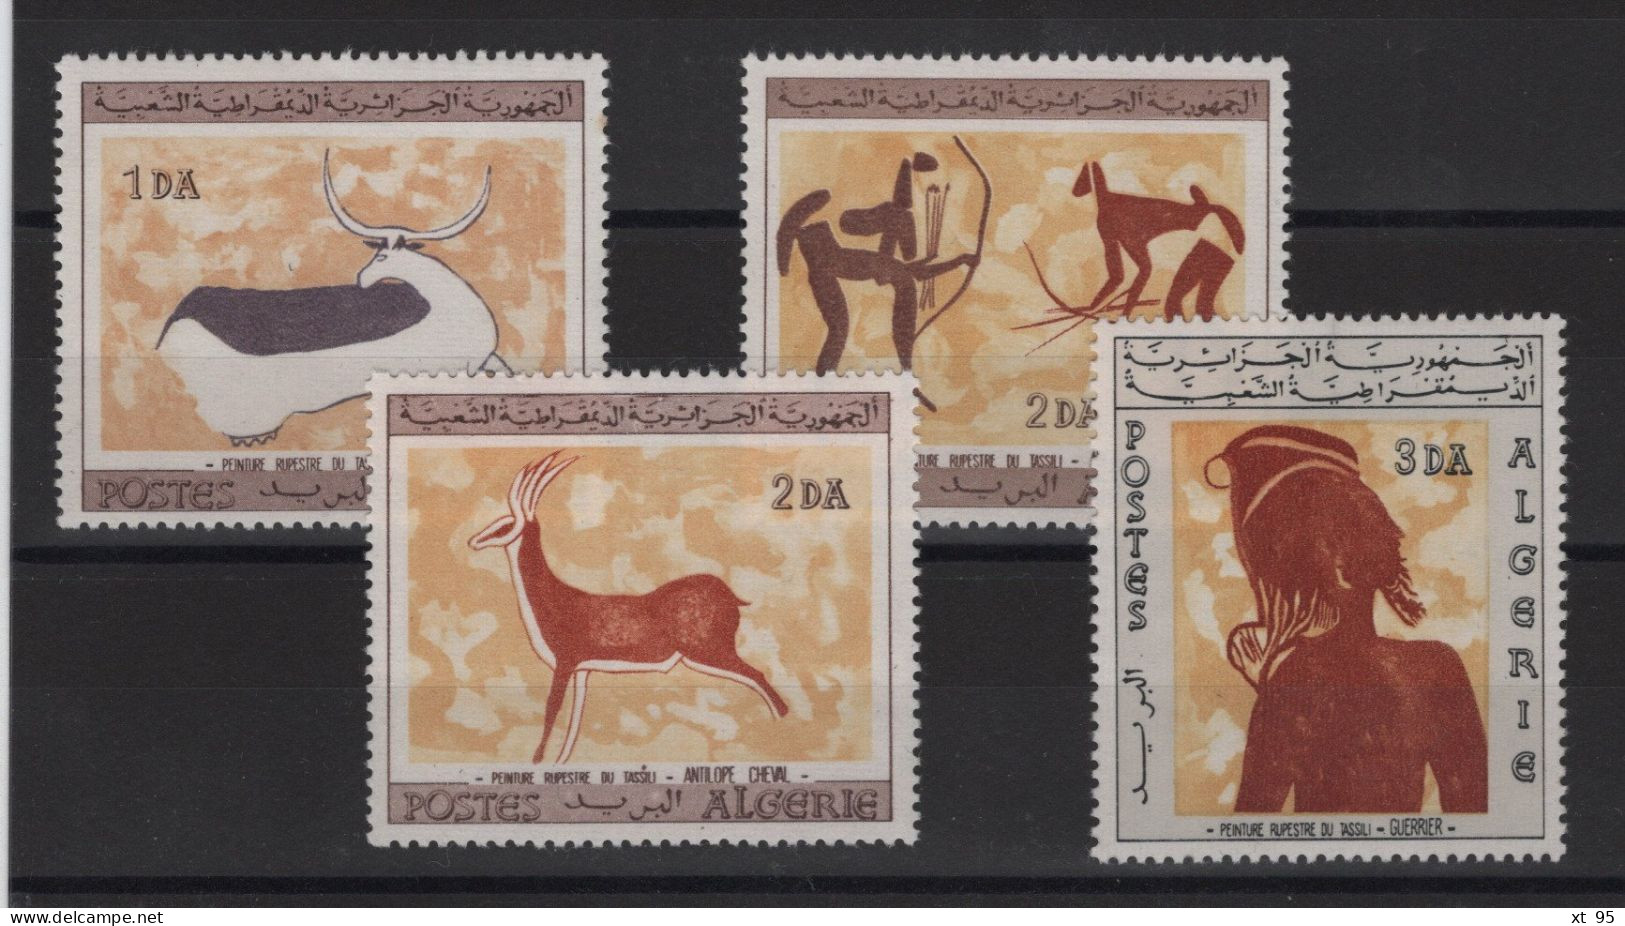 Algerie - N°437 à 440 - Prehistoire - Cote 35.50€ - ** Neuf Sans Charniere - Algérie (1962-...)